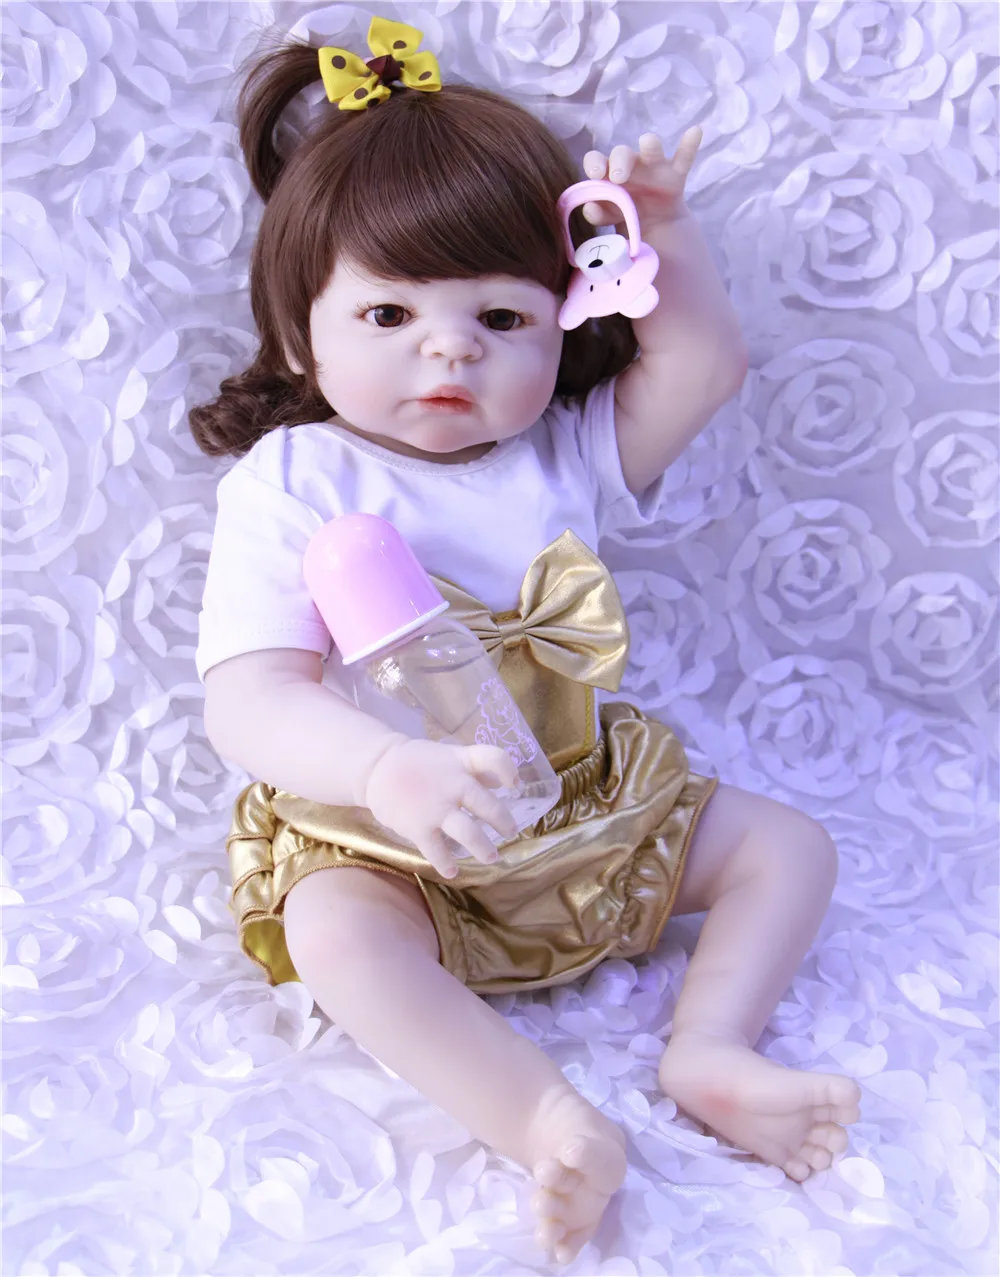 

Кукла Bebe, Кукла reborn 23 ", полностью силиконовая кукла reborn для маленькой девочки, настоящая кукла для новорожденной принцессы BJD, кукла can bathe ...